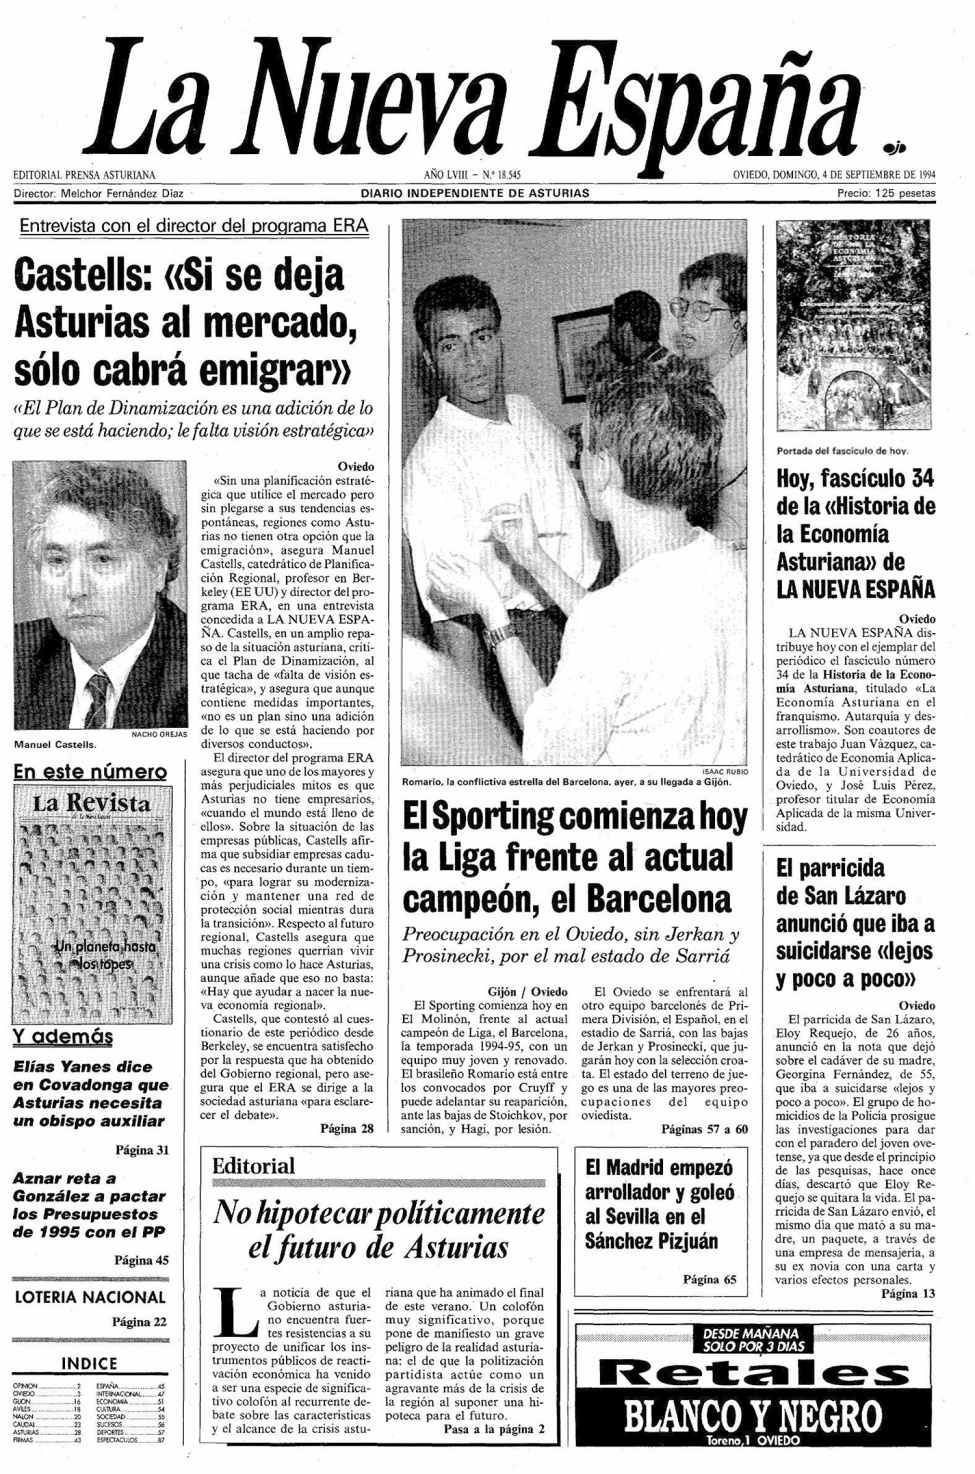 Portada del Domingo, 4 de Septiembre de 1994